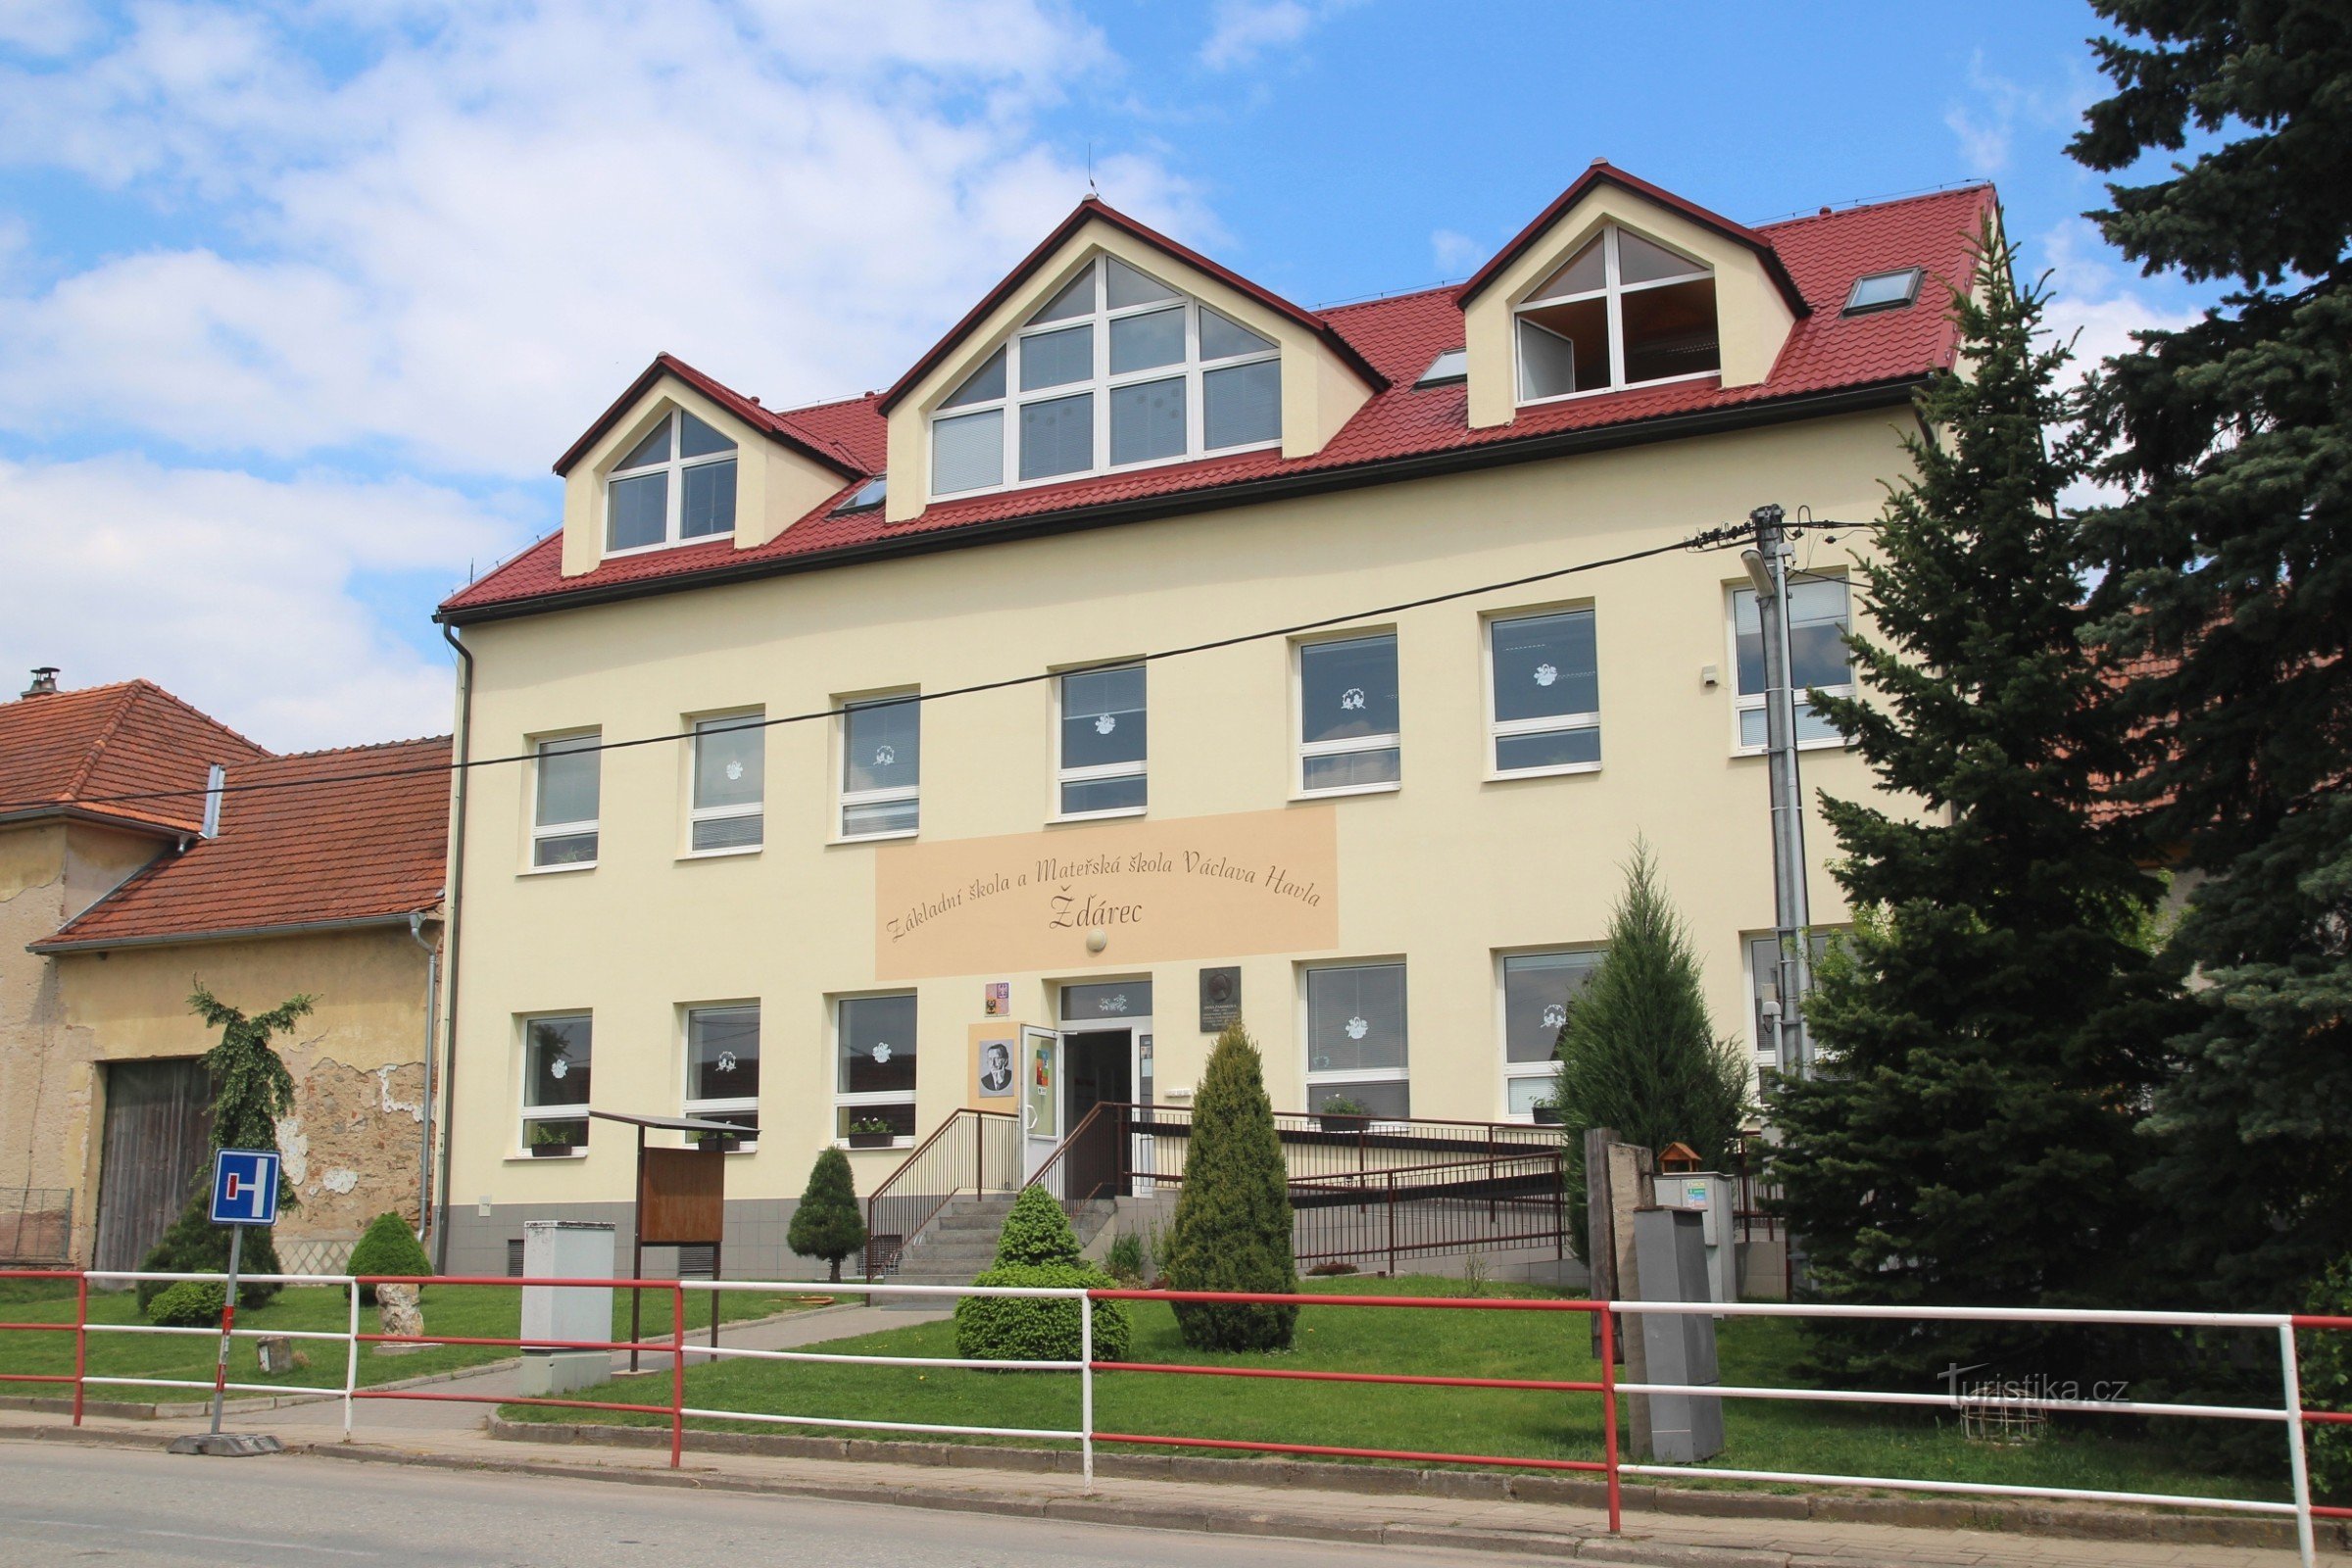 Szkoła Podstawowa im. Václava Havla w Žďárec